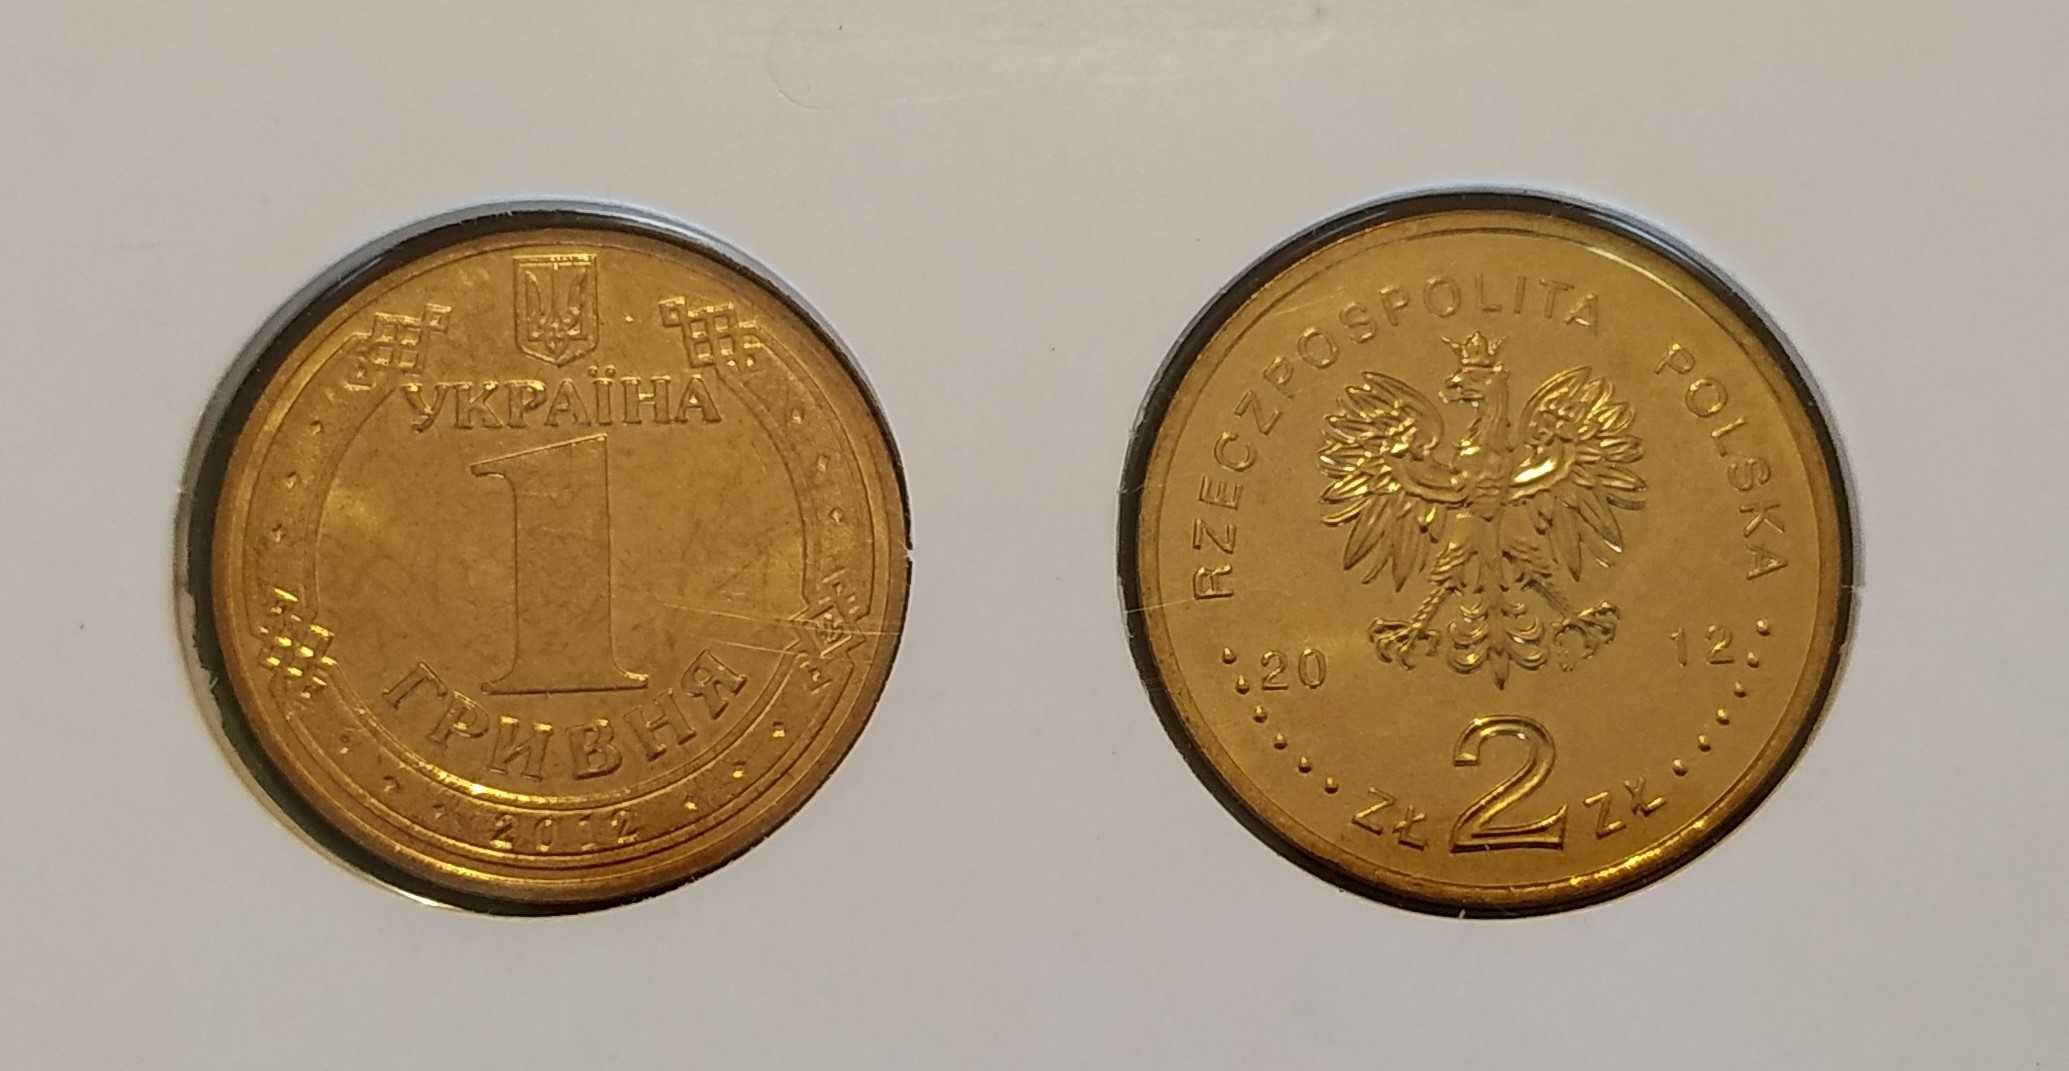 Euro 2012 - moedas comemorativas da Polónia e Ucrânia Coincard